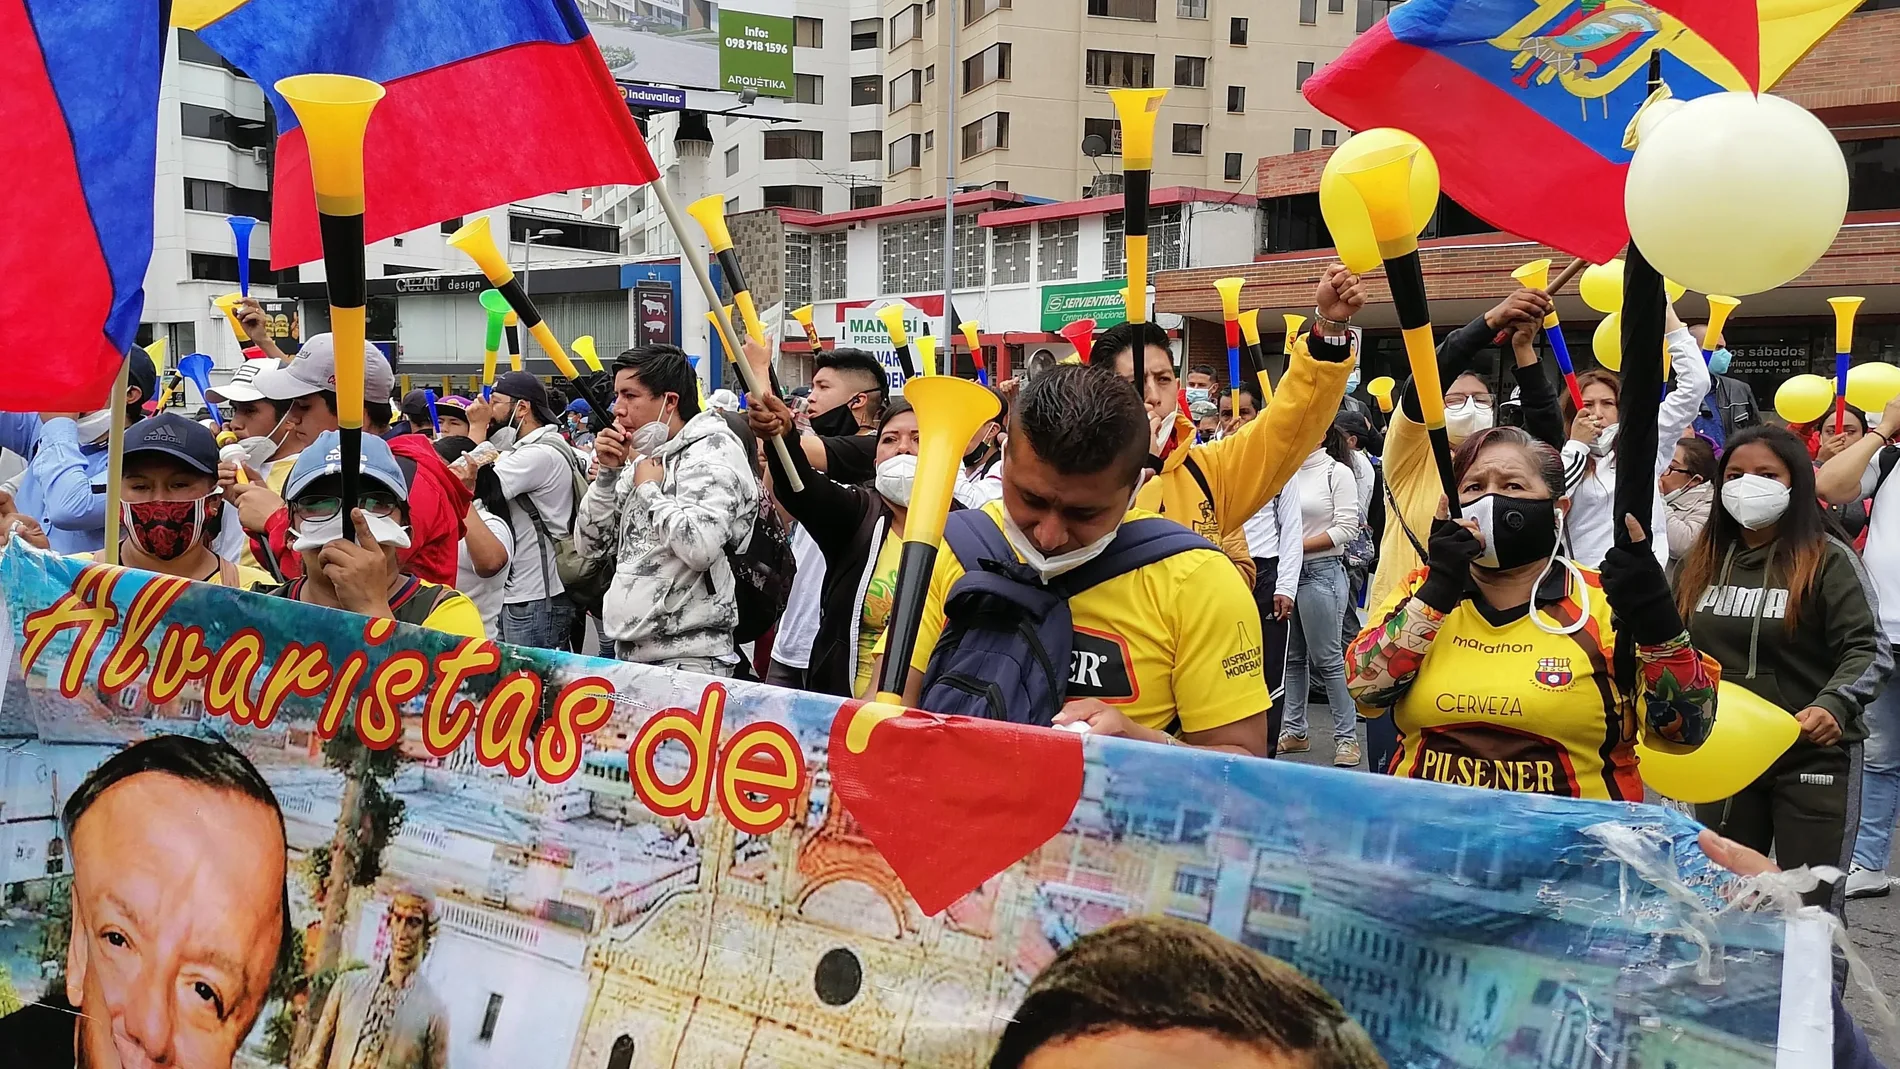 AME1496. QUITO (ECUADOR), 27/11/2020.- Cientos de personas protestan hoy frente a la sede del Consejo Nacional Electoral (CNE), para exigir la inscripción de la candidatura del empresario ecuatoriano Álvaro Noboa, no aceptada por incumplimiento de plazos de registro, en Quito (Ecuador). "Queremos democracia, estamos hartos de los políticos", dijo un manifestante a Efe en medio de fuertes bocinazos, mientras que otros aseguraron que "no se marcharán hasta que sea aceptada la candidatura". Dueño de una de las mayores fortunas del país, Noboa se ha presentado candidato a la presidencia en cinco ocasiones desde 1998. EFE/ Elías L Benarroch